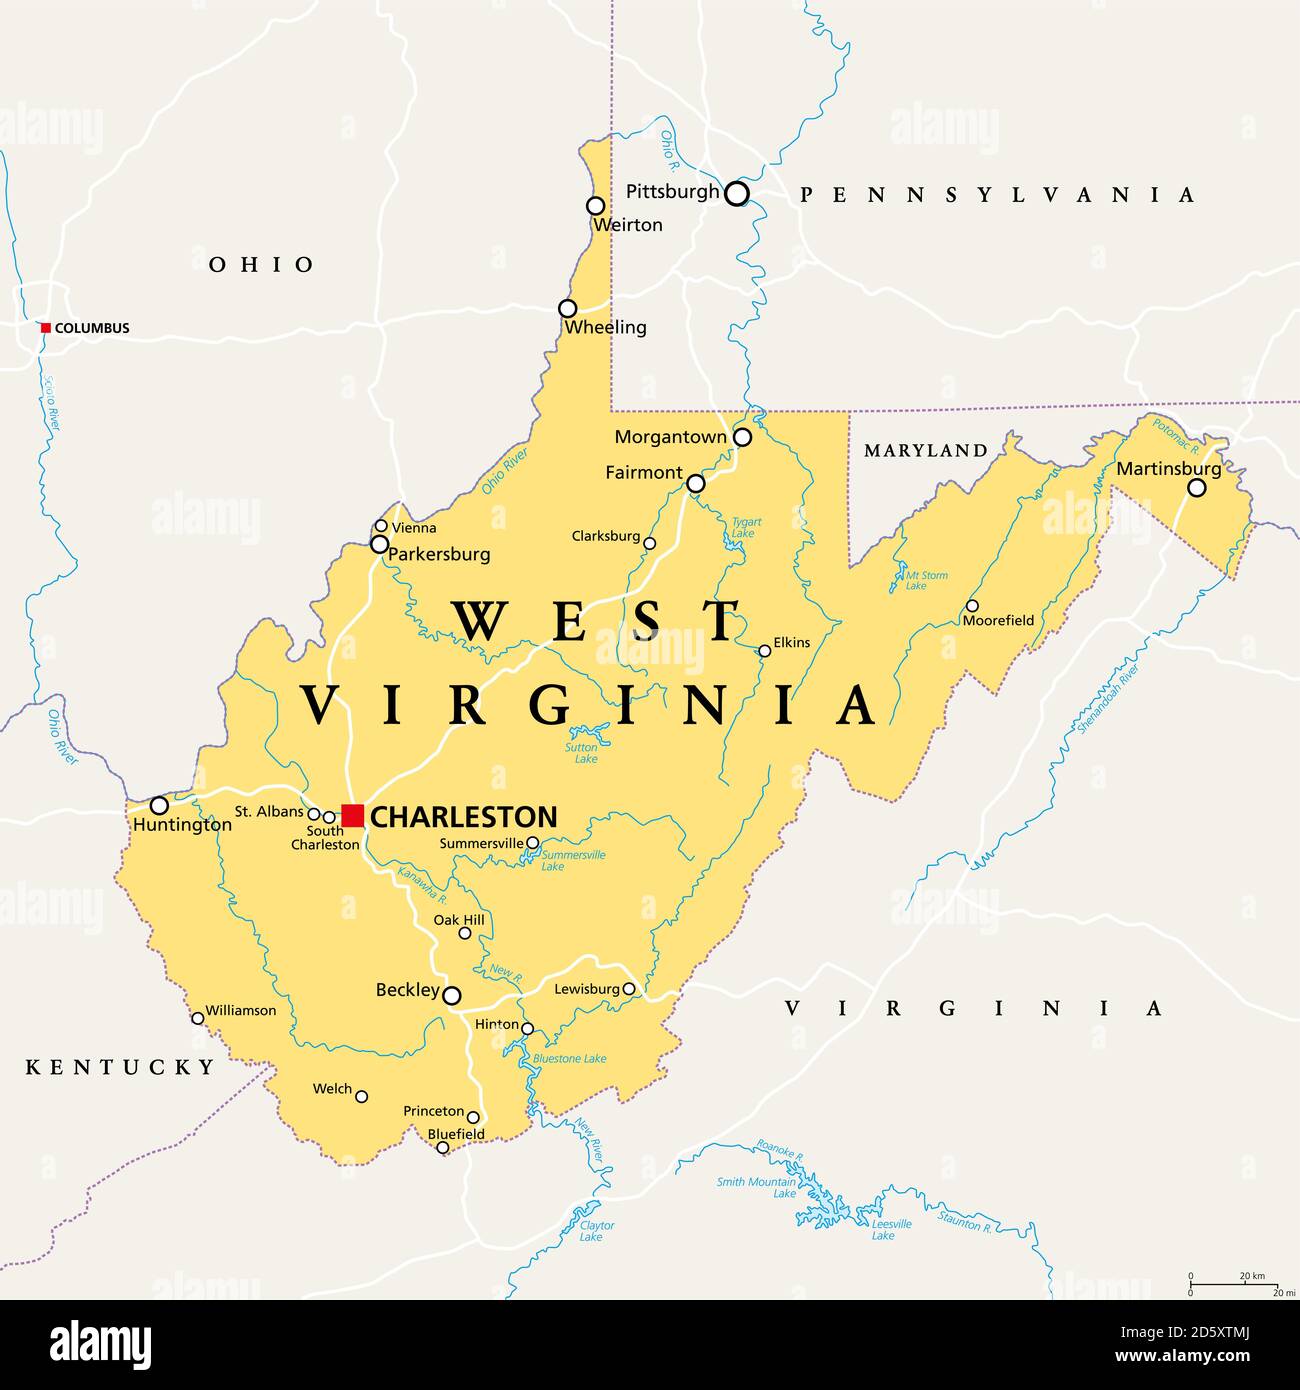 West Virginia, WV, politische Landkarte. Staat in der Appalachischen Region im Süden der Vereinigten Staaten von Amerika. Teil der südöstlichen Region des Mittelatlantiks. Stockfoto